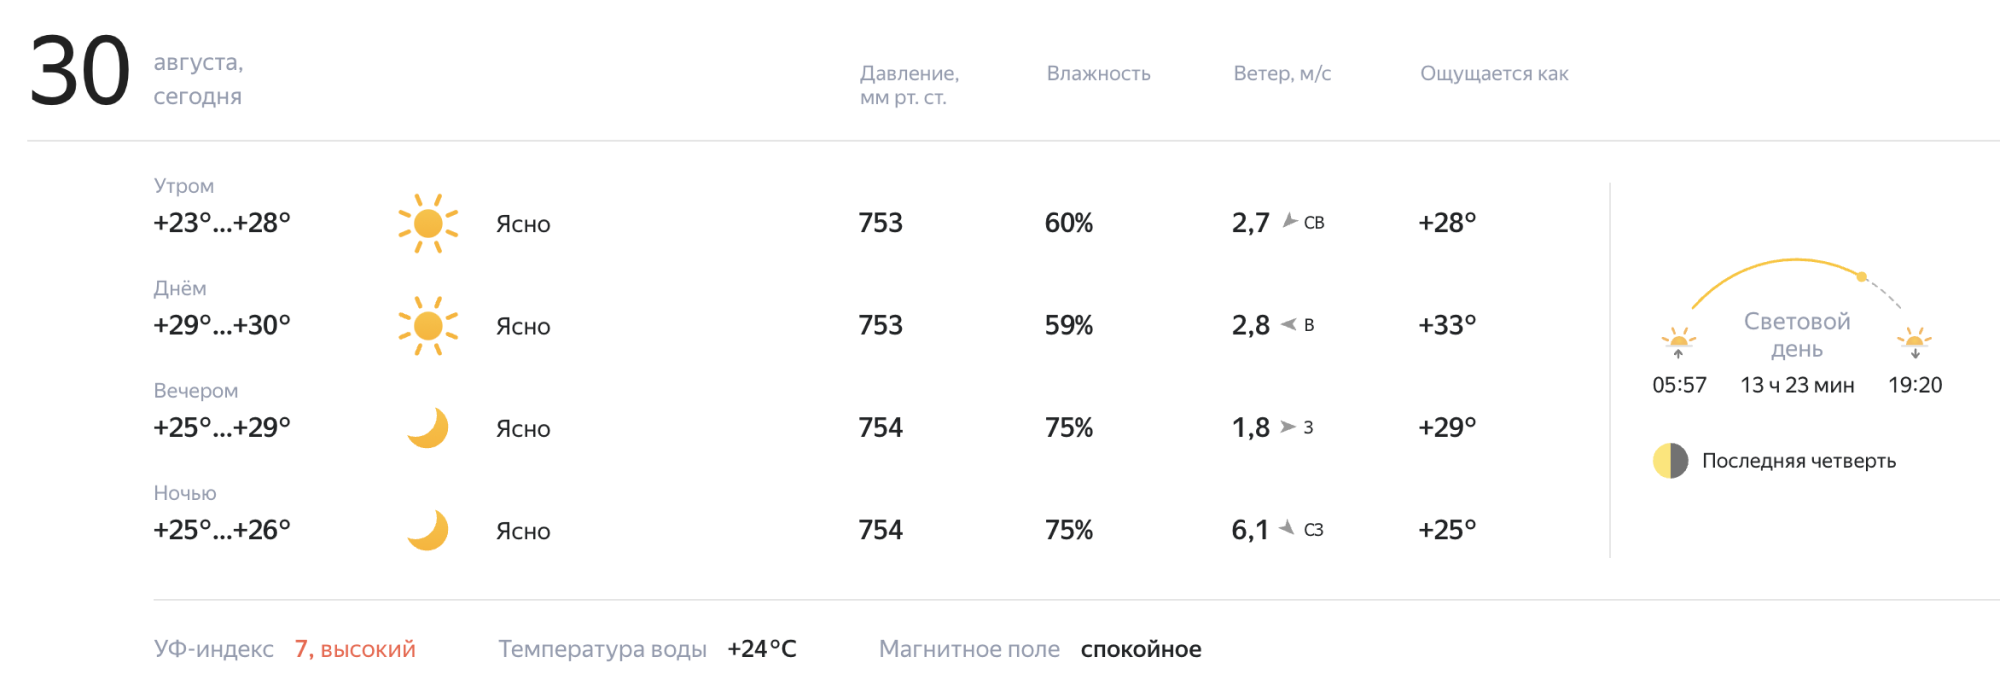 Погода в Хабаровске сегодня. Погода в Хабаровске на 14 дней. Погода в Хабаровске сегодня сейчас. Время 24 сентября